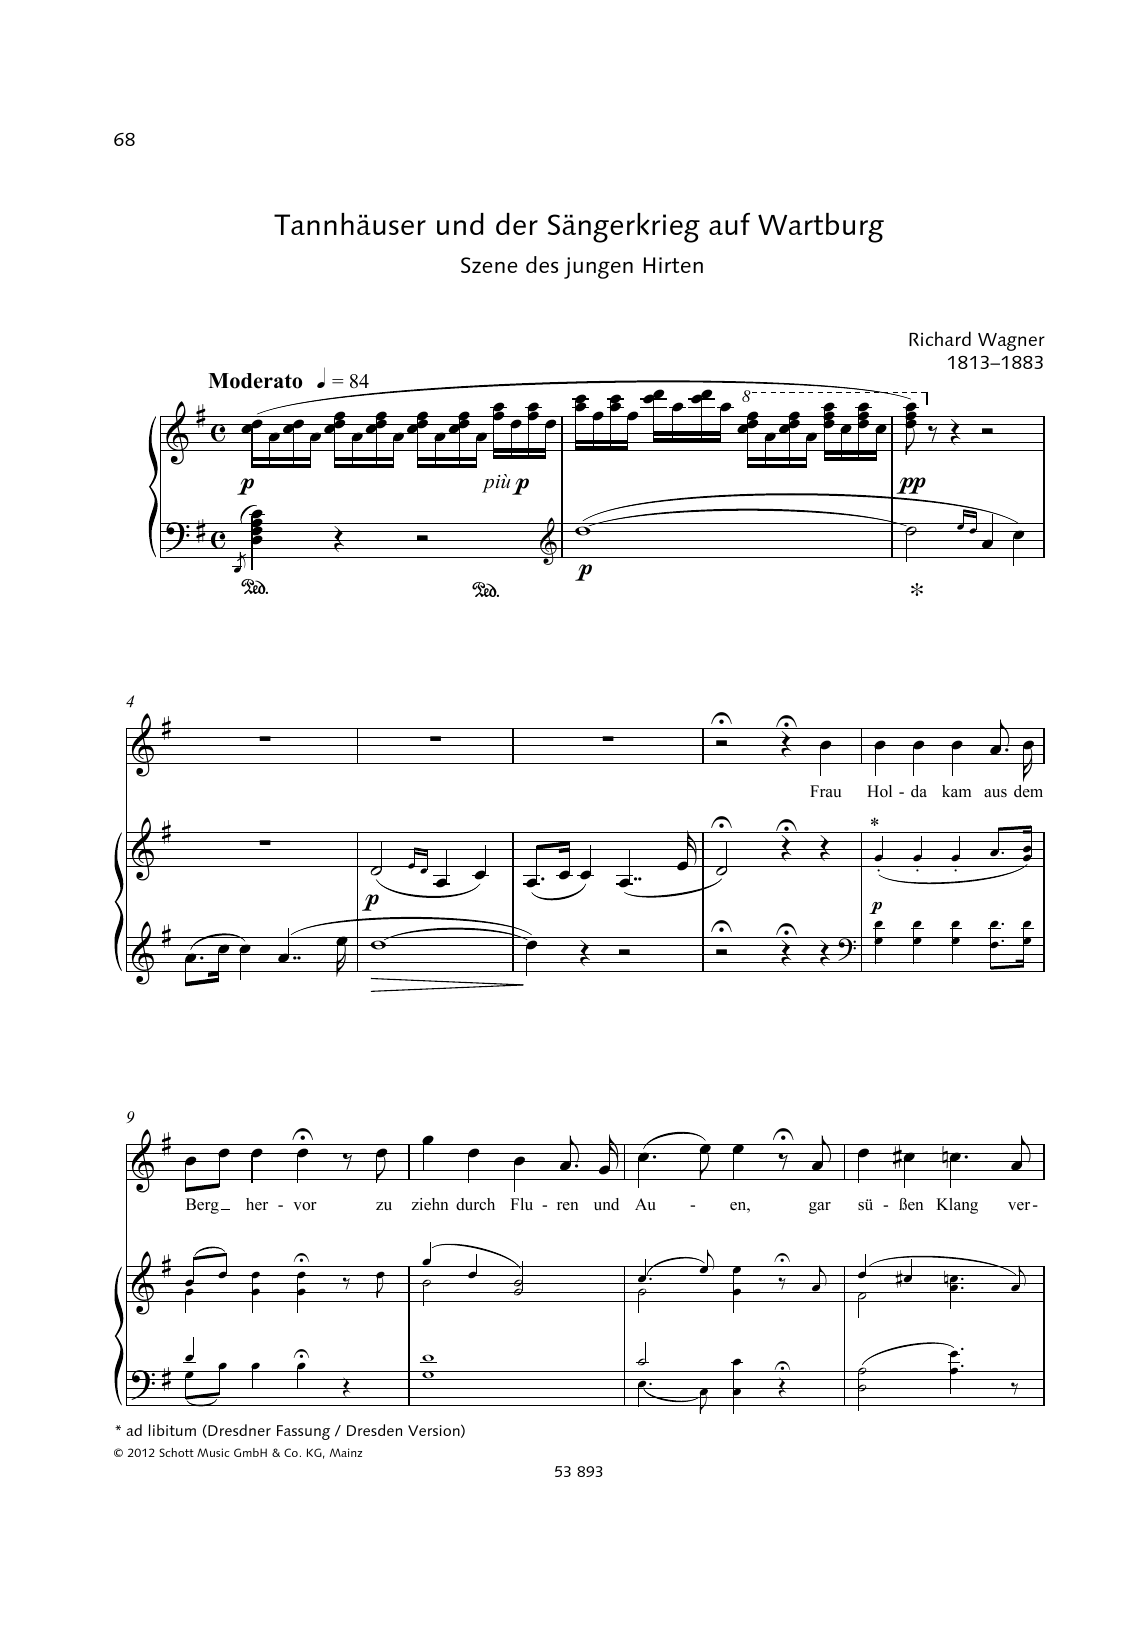 Richard Wagner Frau Holda kam aus dem Berg hervor Sheet Music Notes & Chords for Piano & Vocal - Download or Print PDF